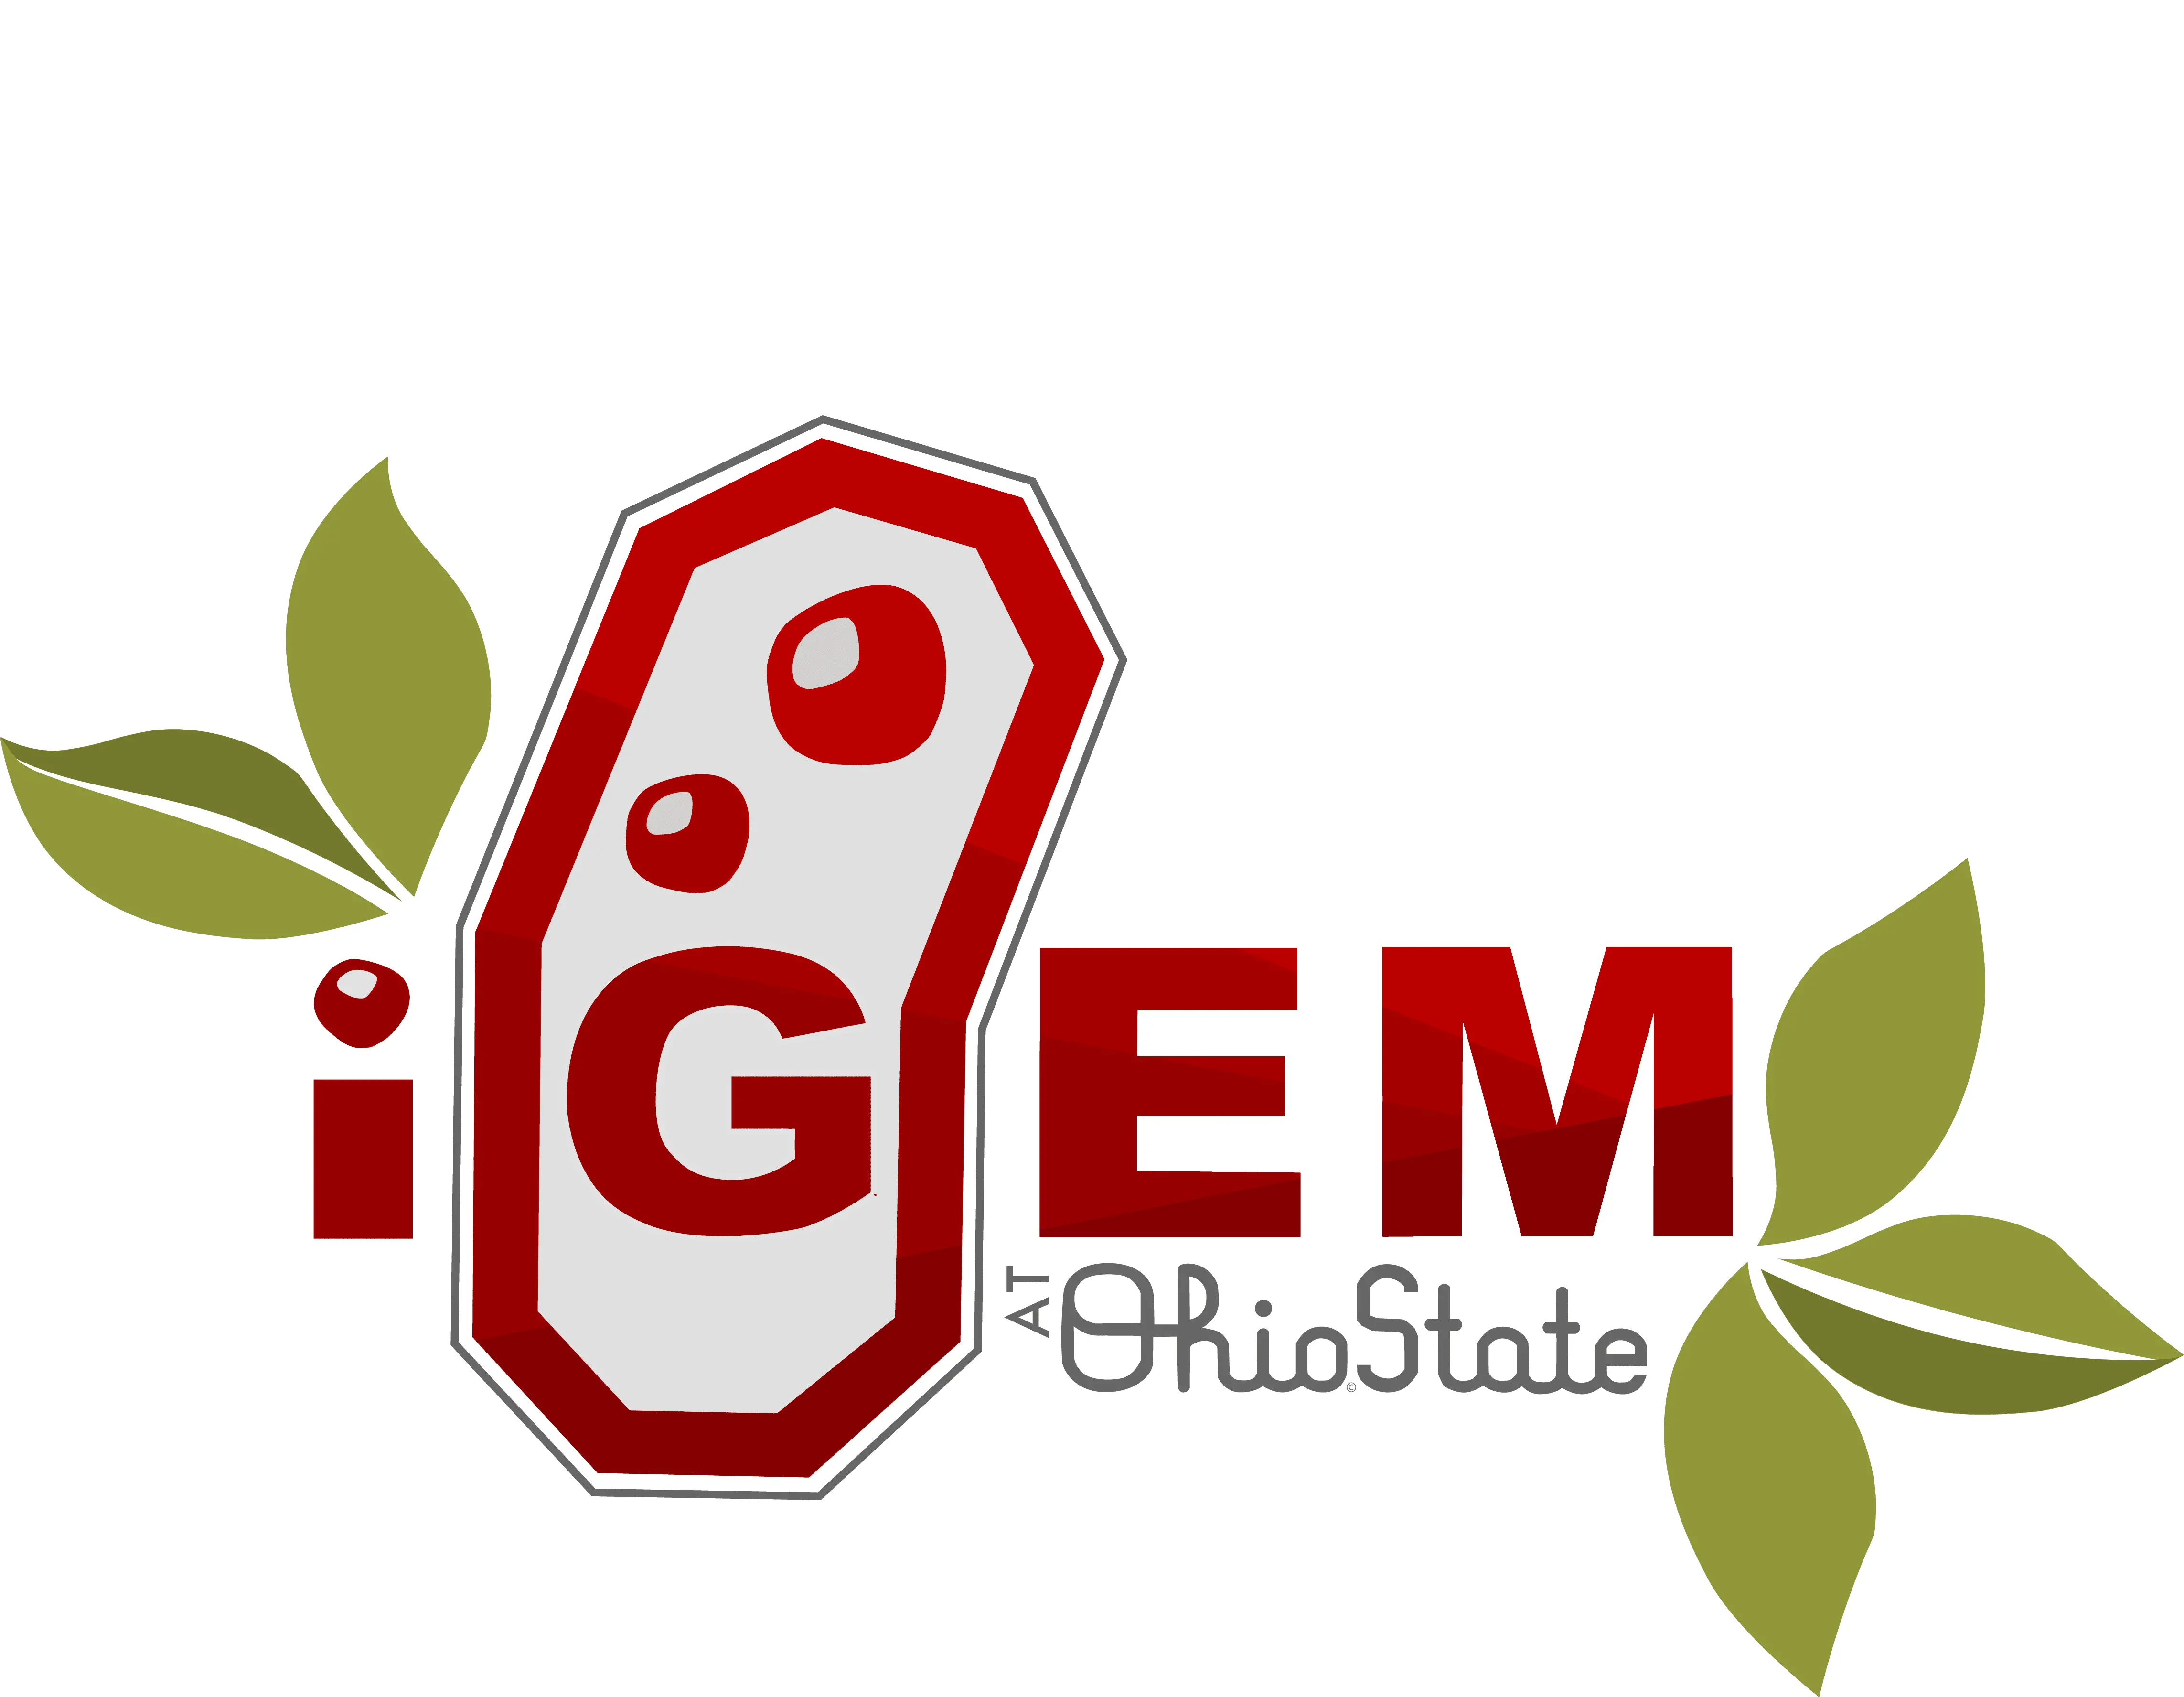 iGEM Ohio State University